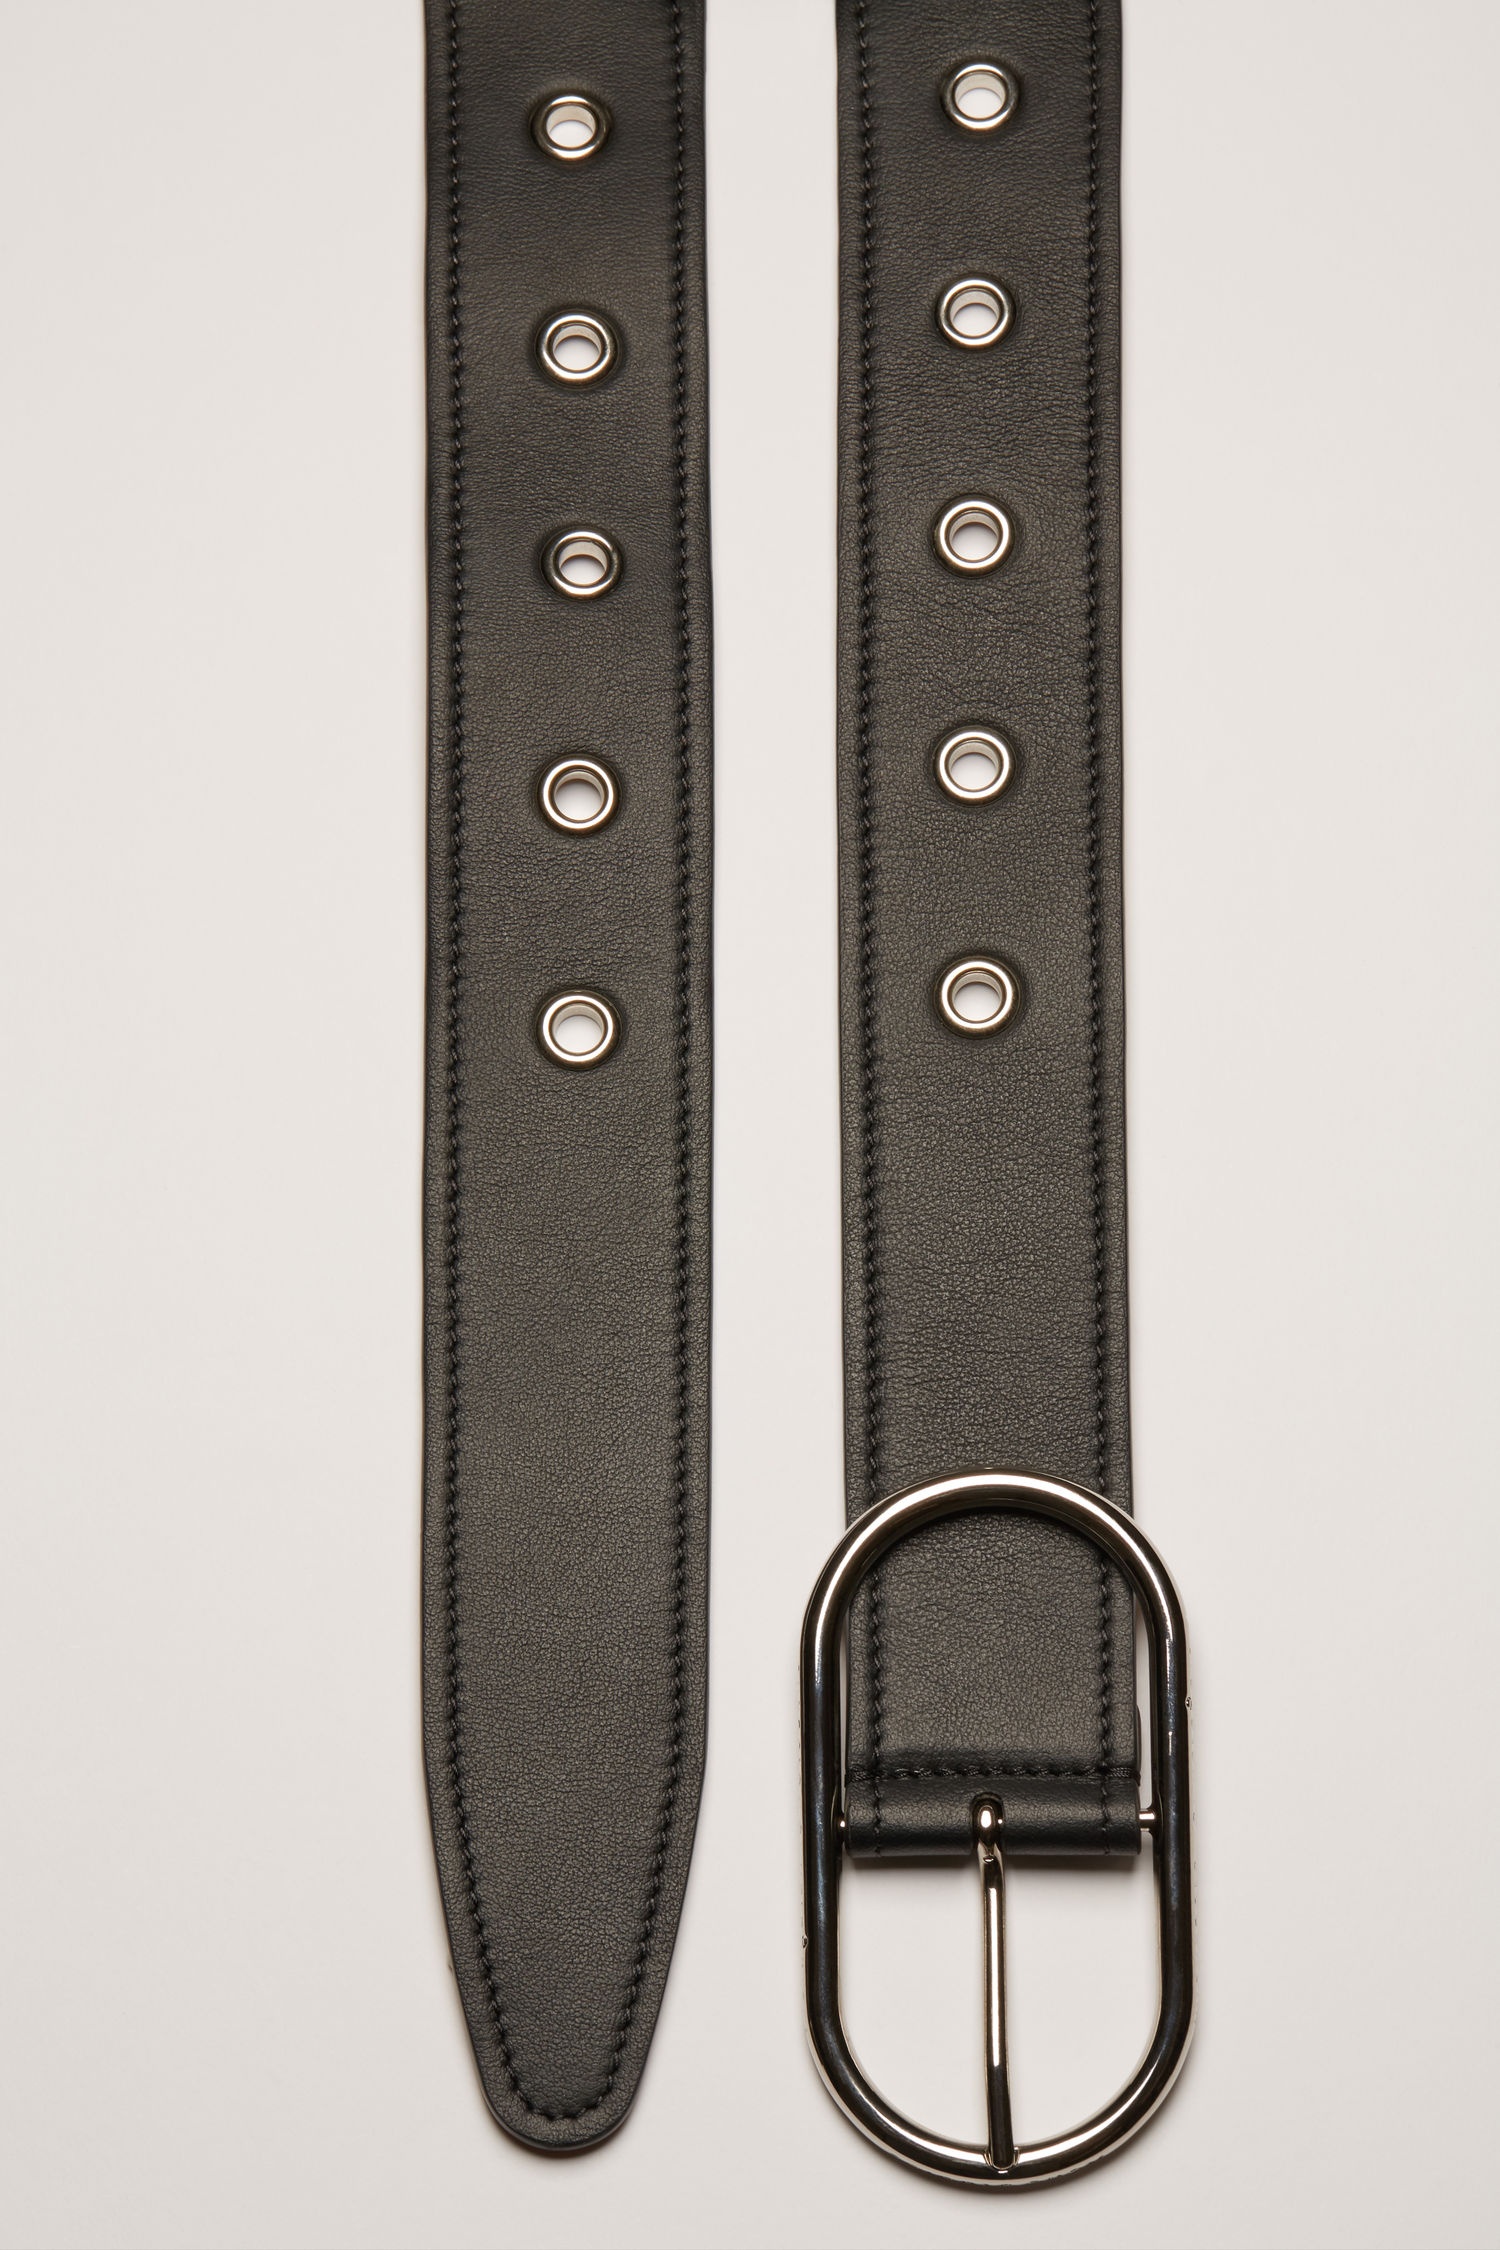 Studded leather belt black - 3